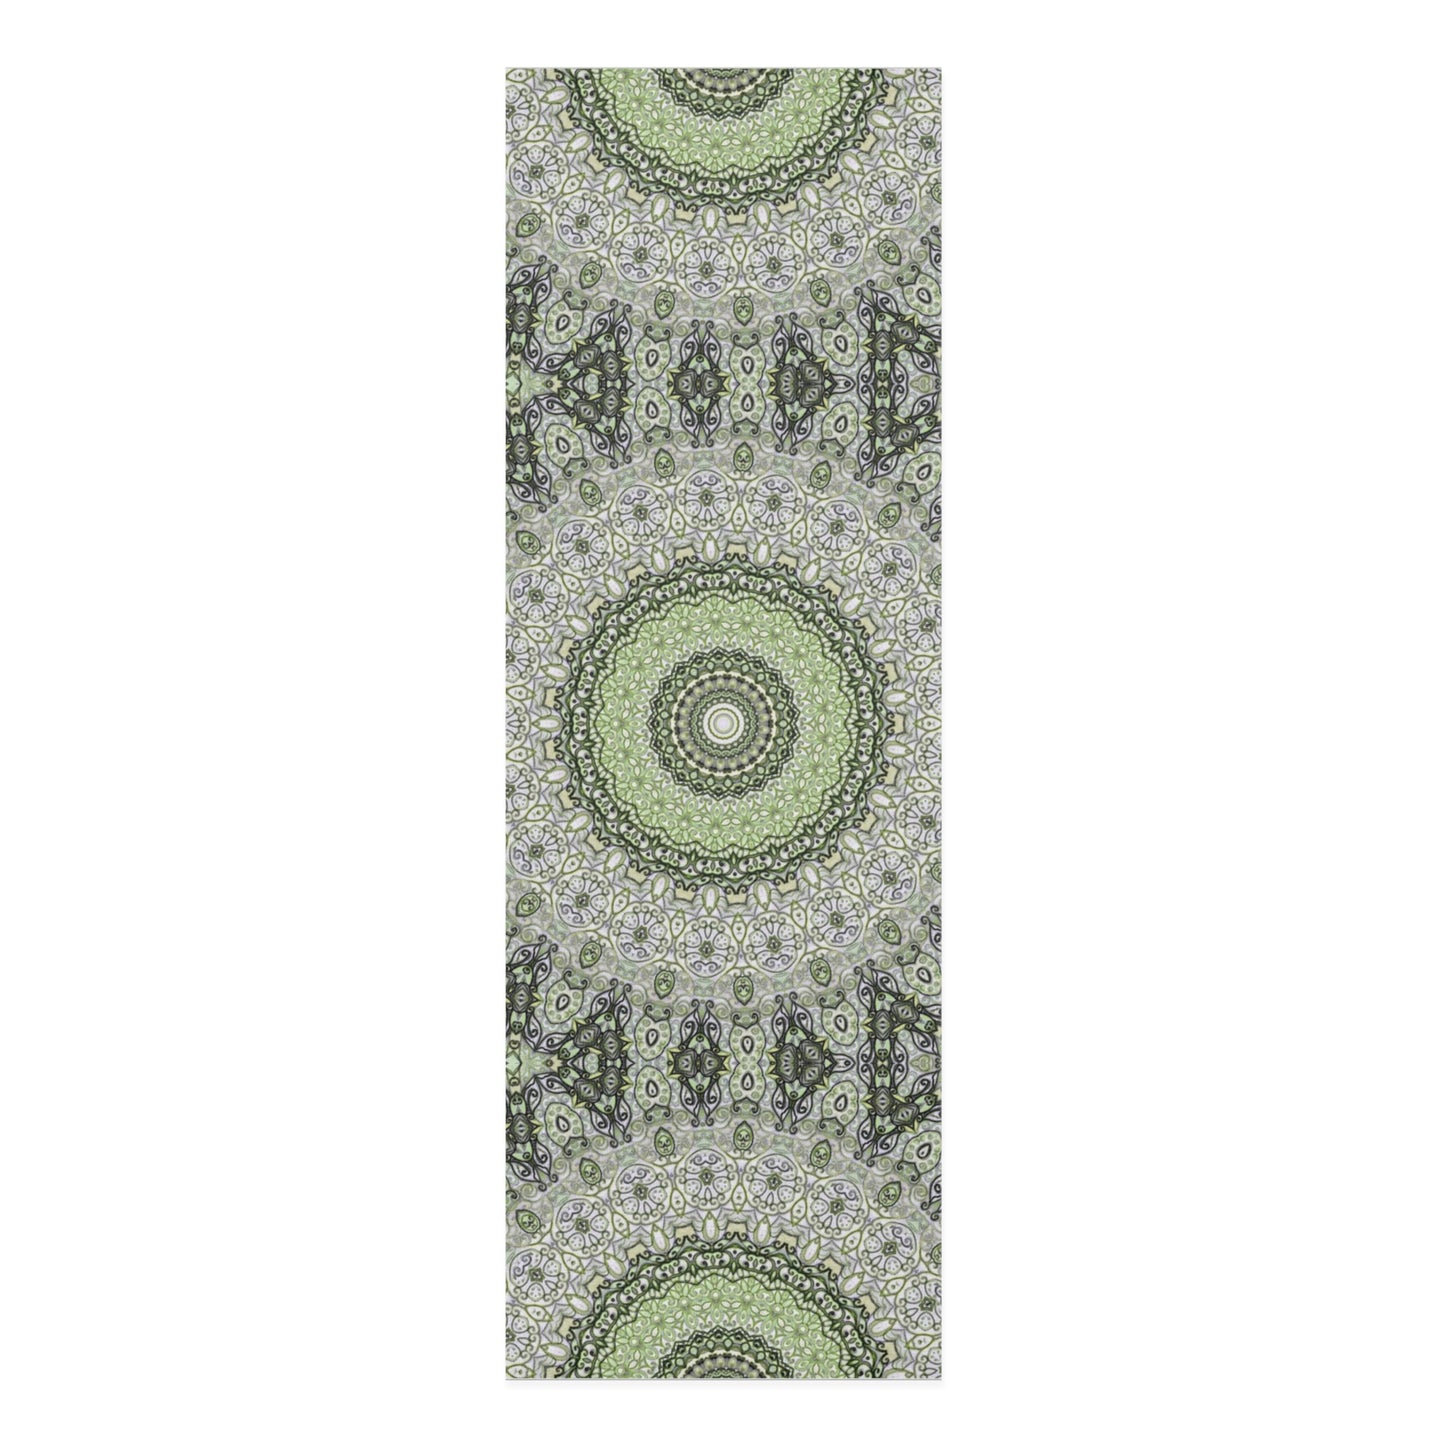 Mandala Yoga Mat (Green)